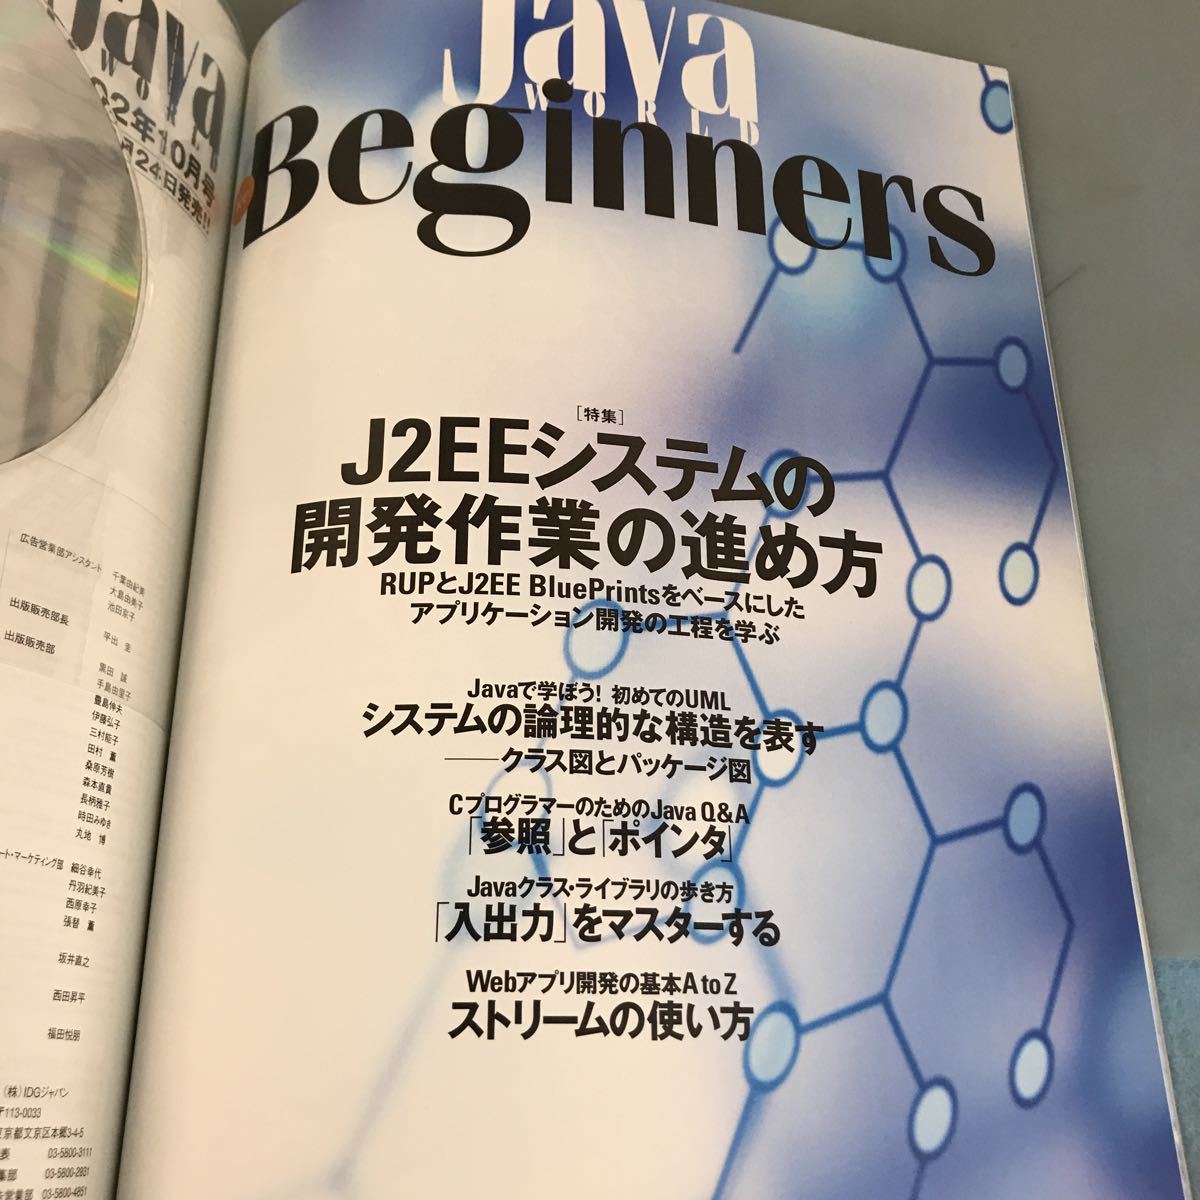 A07-021 [ месяц ...]... мир  2002 9 [ дополнение  CD-ROM]Java2  записывание ！  специальное издание  Web услуги /JMS/J2EE развитие   pro ... IDG Япония 